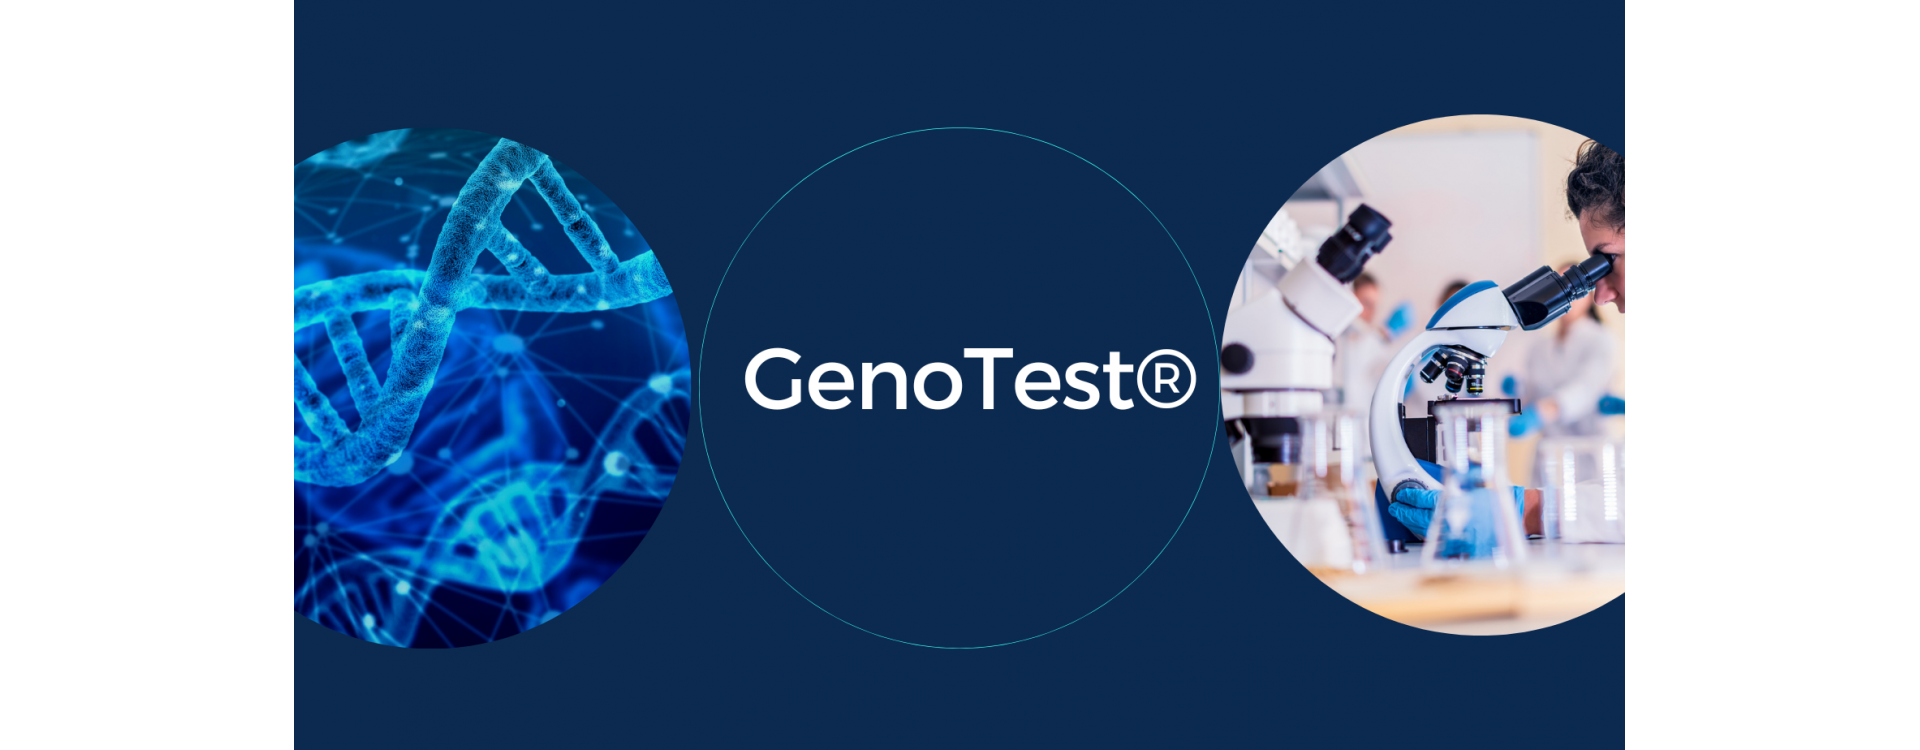 GenoTest®: Prevenzione e salute con il test del DNA